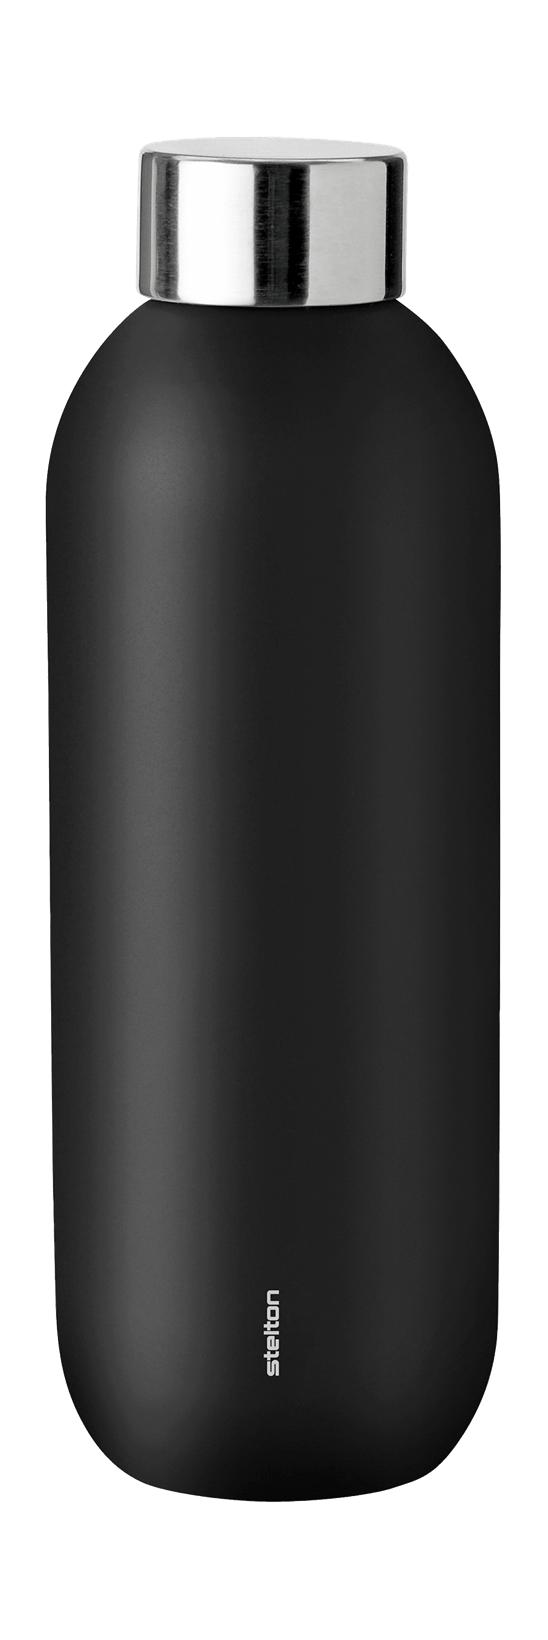 Stelton holder kjølig termo flaske 0,6 L, svart